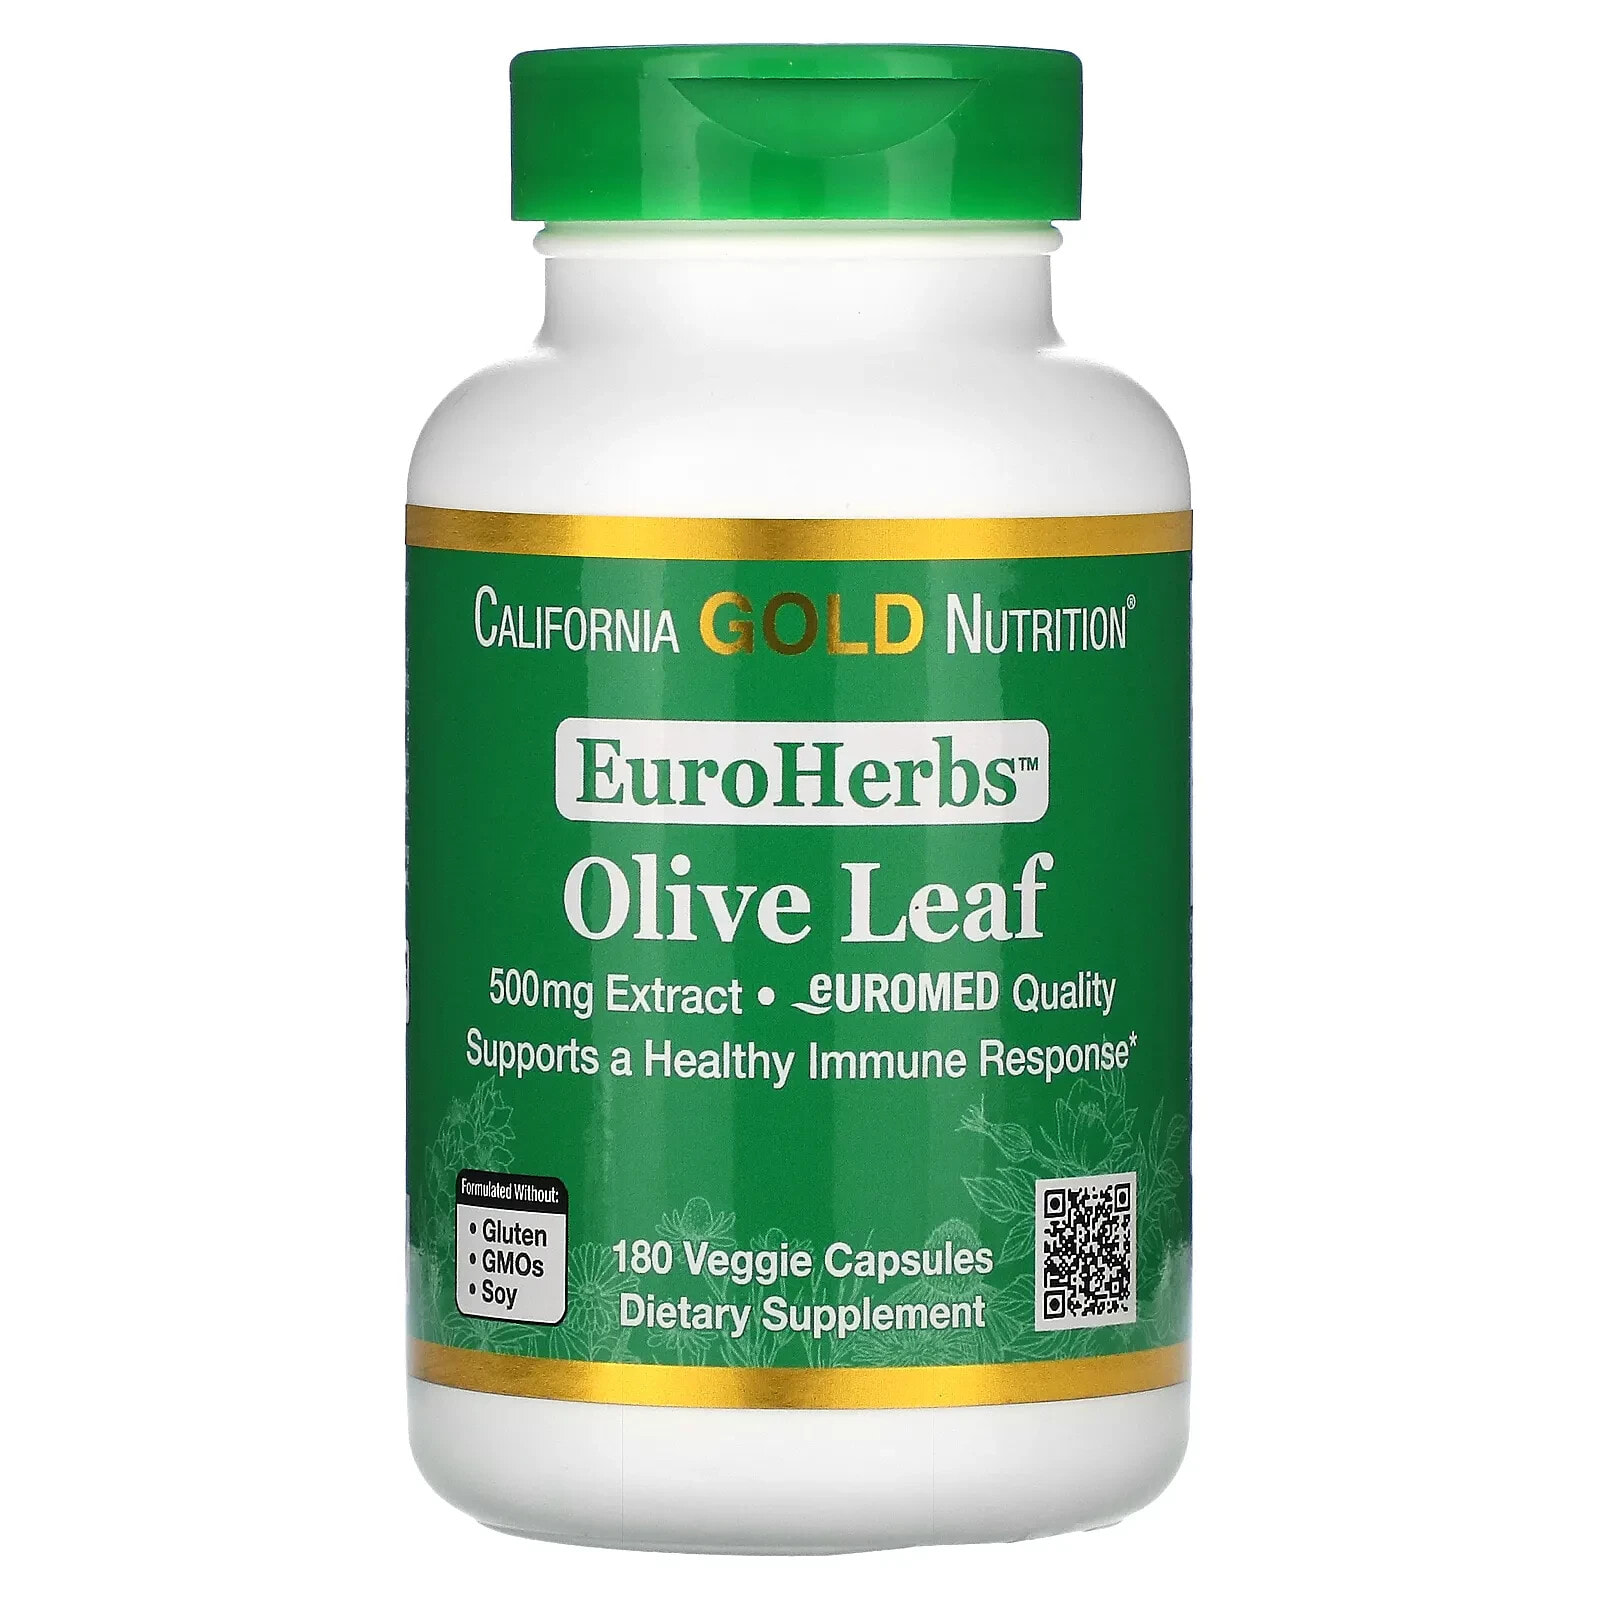 California Gold Nutrition, Экстракт из листьев оливкового дерева, EuroHerbs, европейское качество, 500 мг, 180 растительных капсул